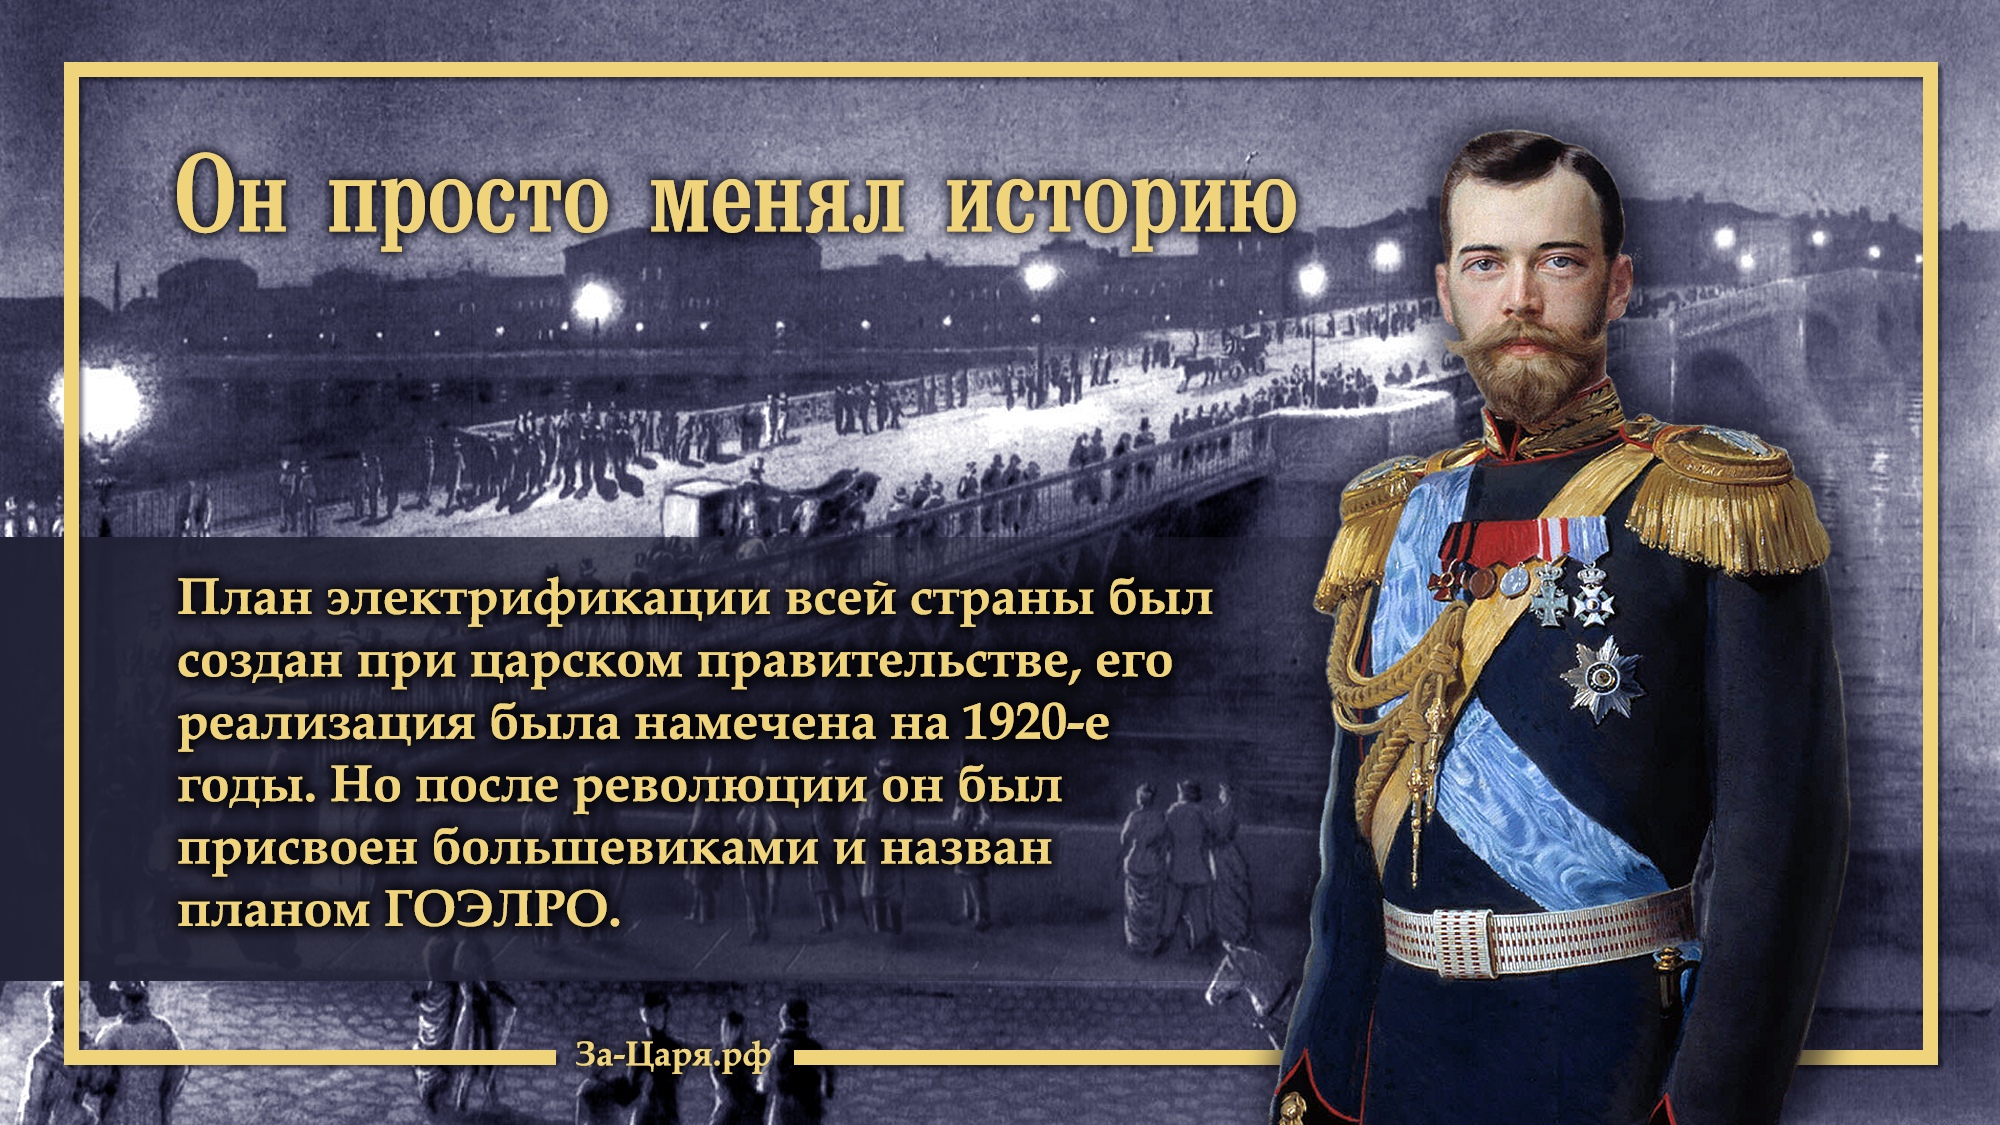 Время появления российской империи